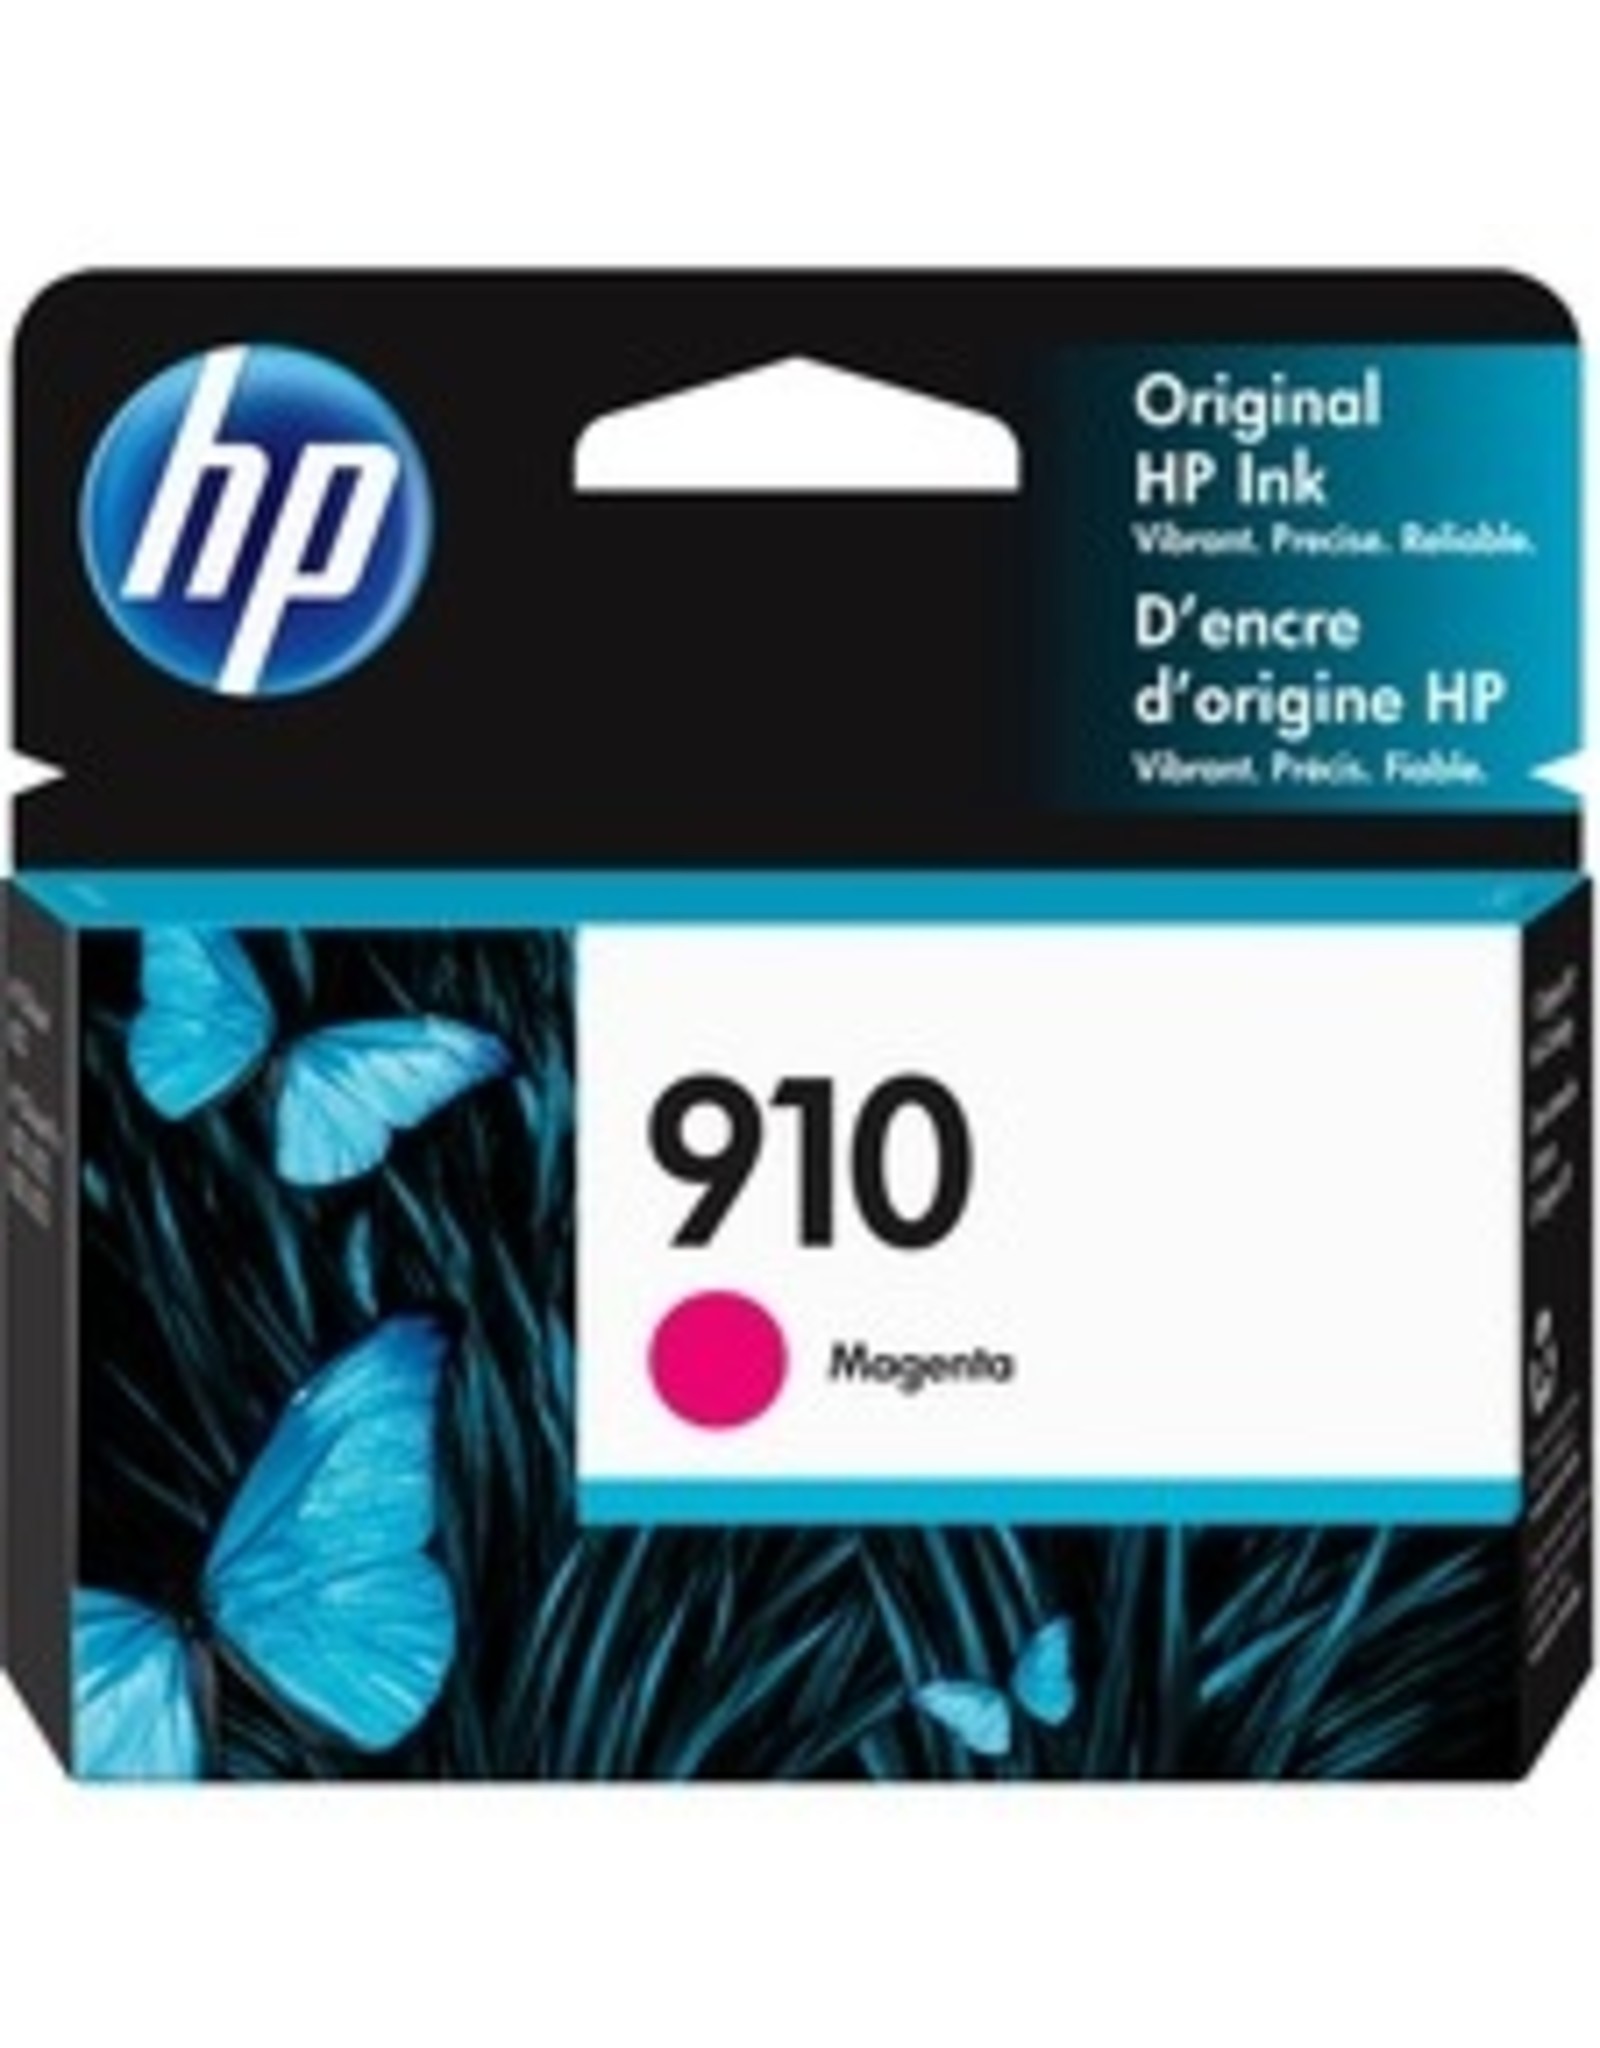 HP HP 910 Original Ink Cartridge - Magenta